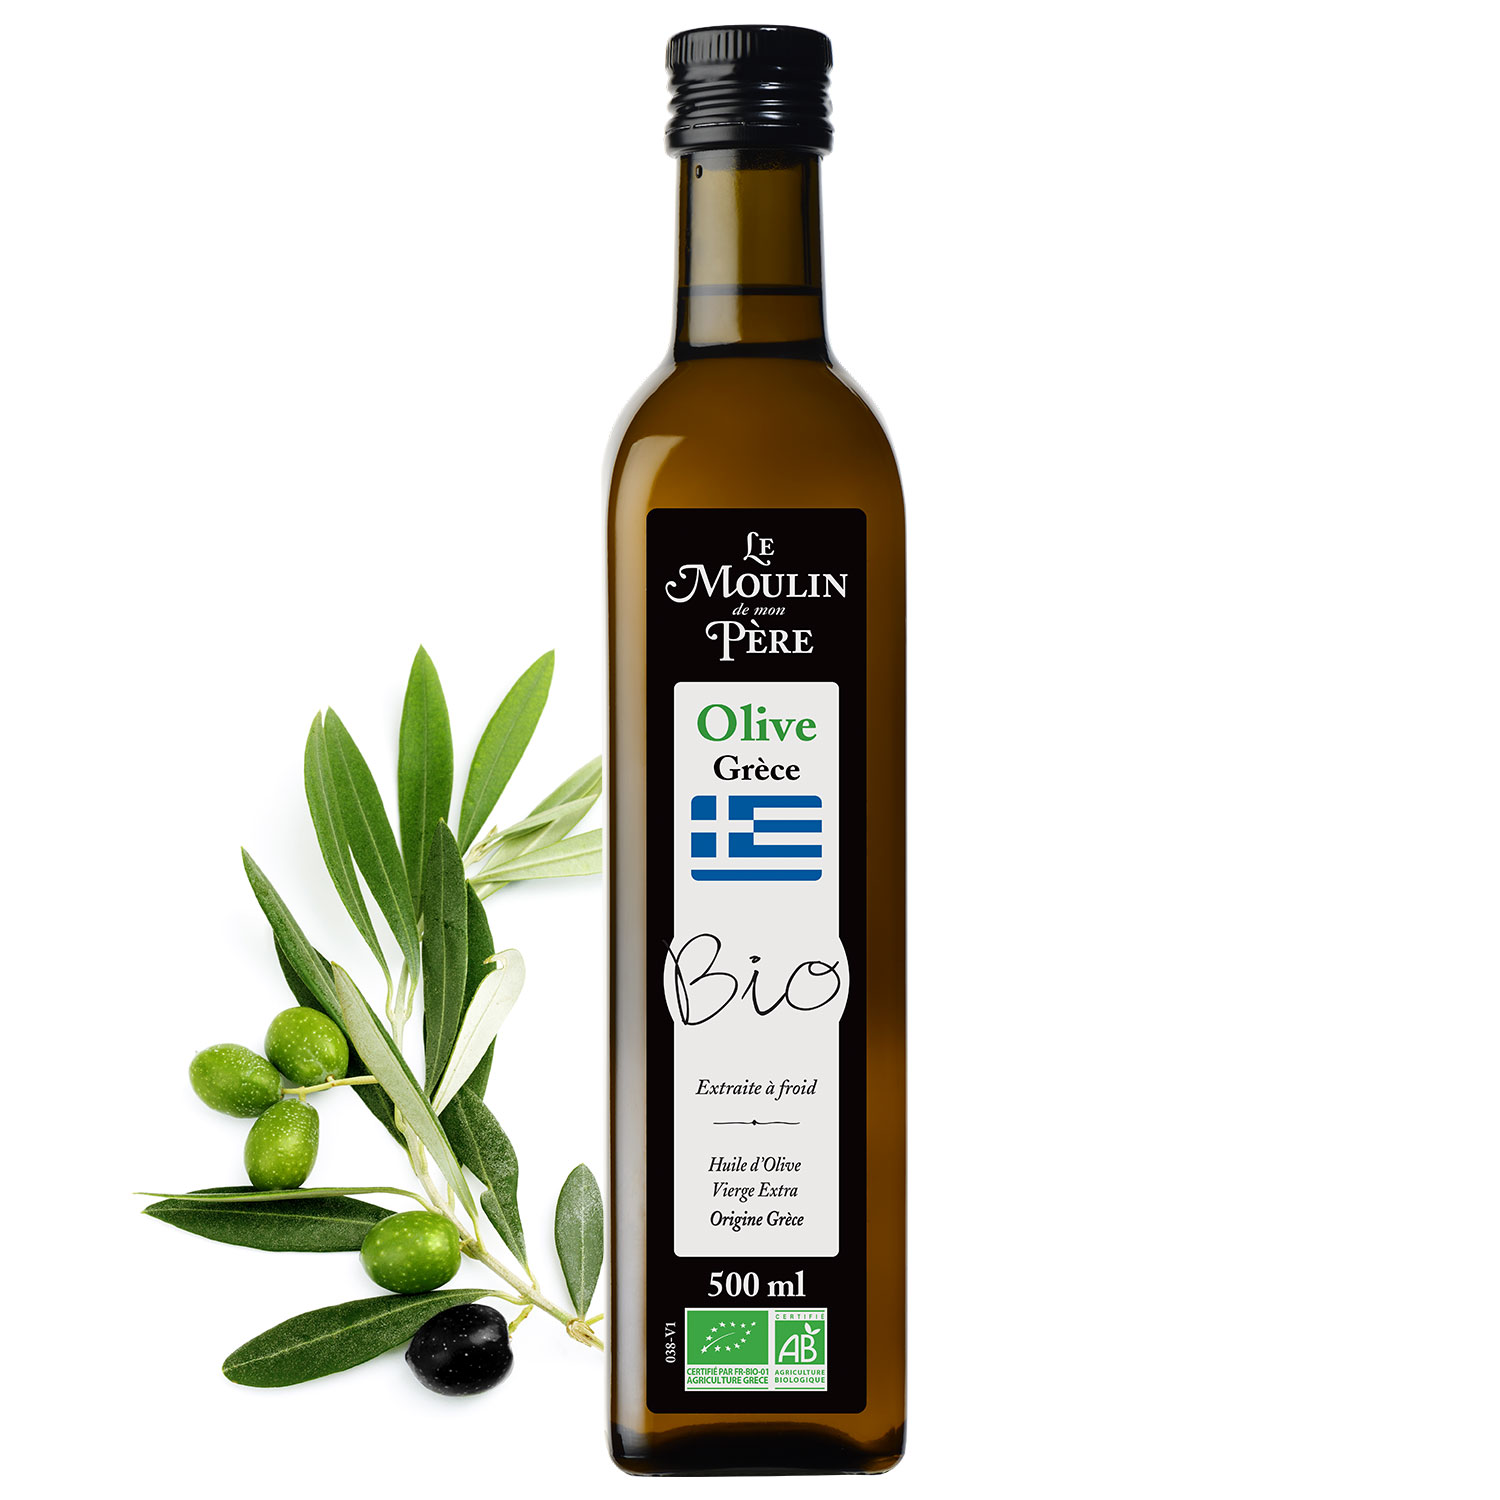 https://lemoulindemonpere.fr/wp-content/uploads/2021/07/huile-olive-grece.jpg